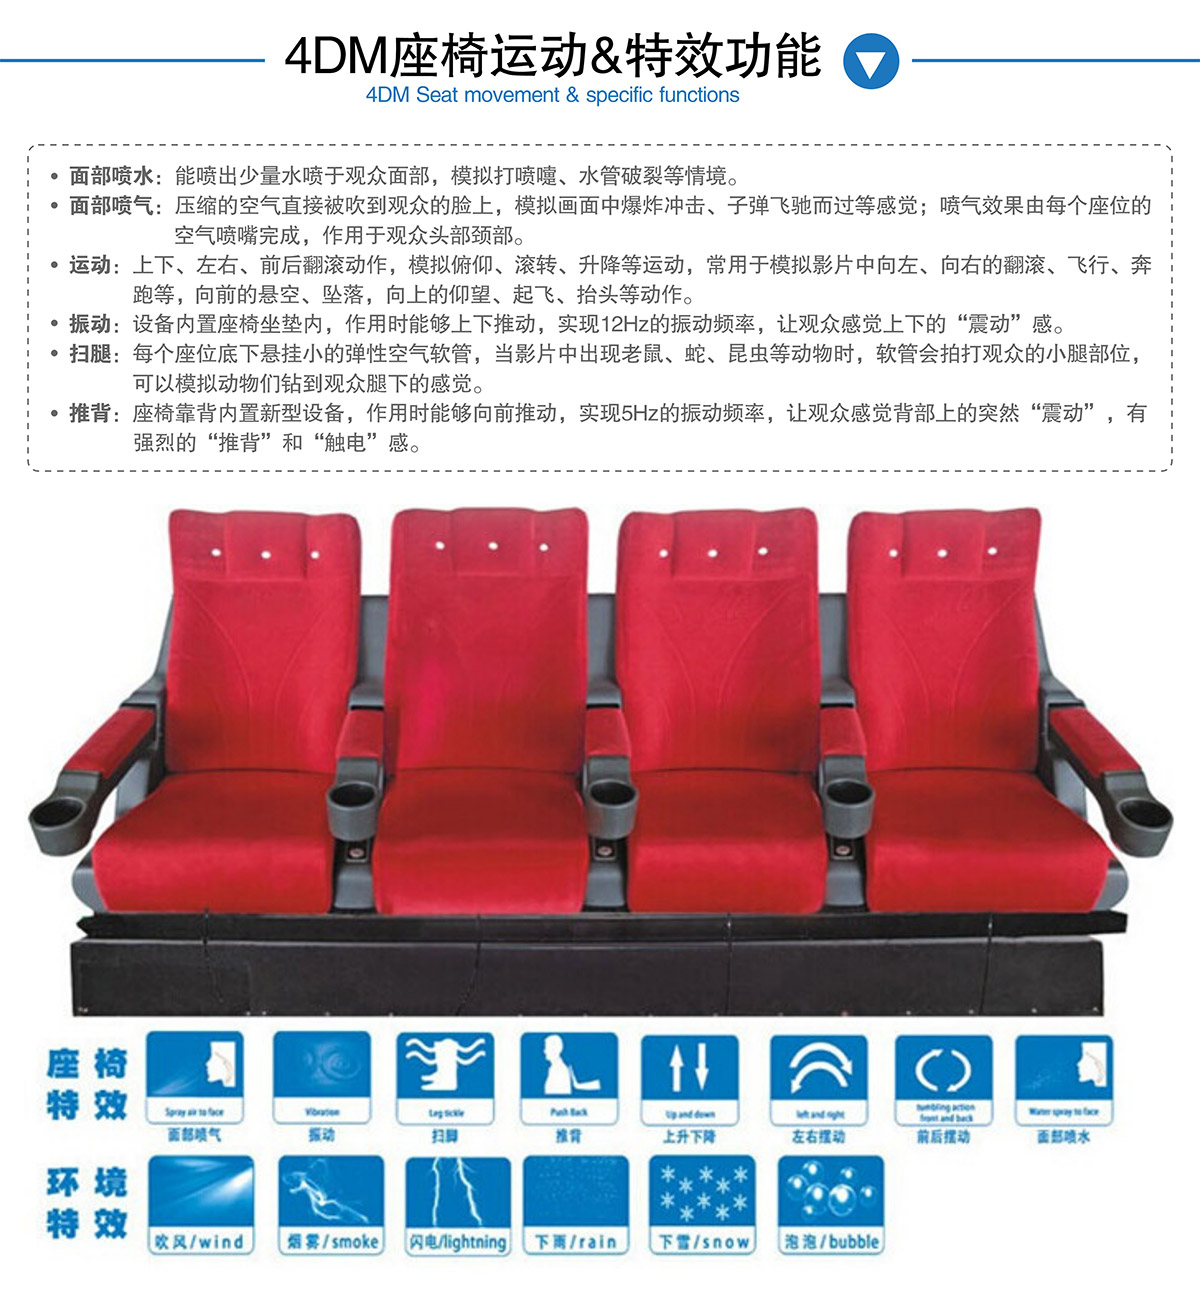 广东省广州奇影幻境4DM座椅运动和特效功能.jpg